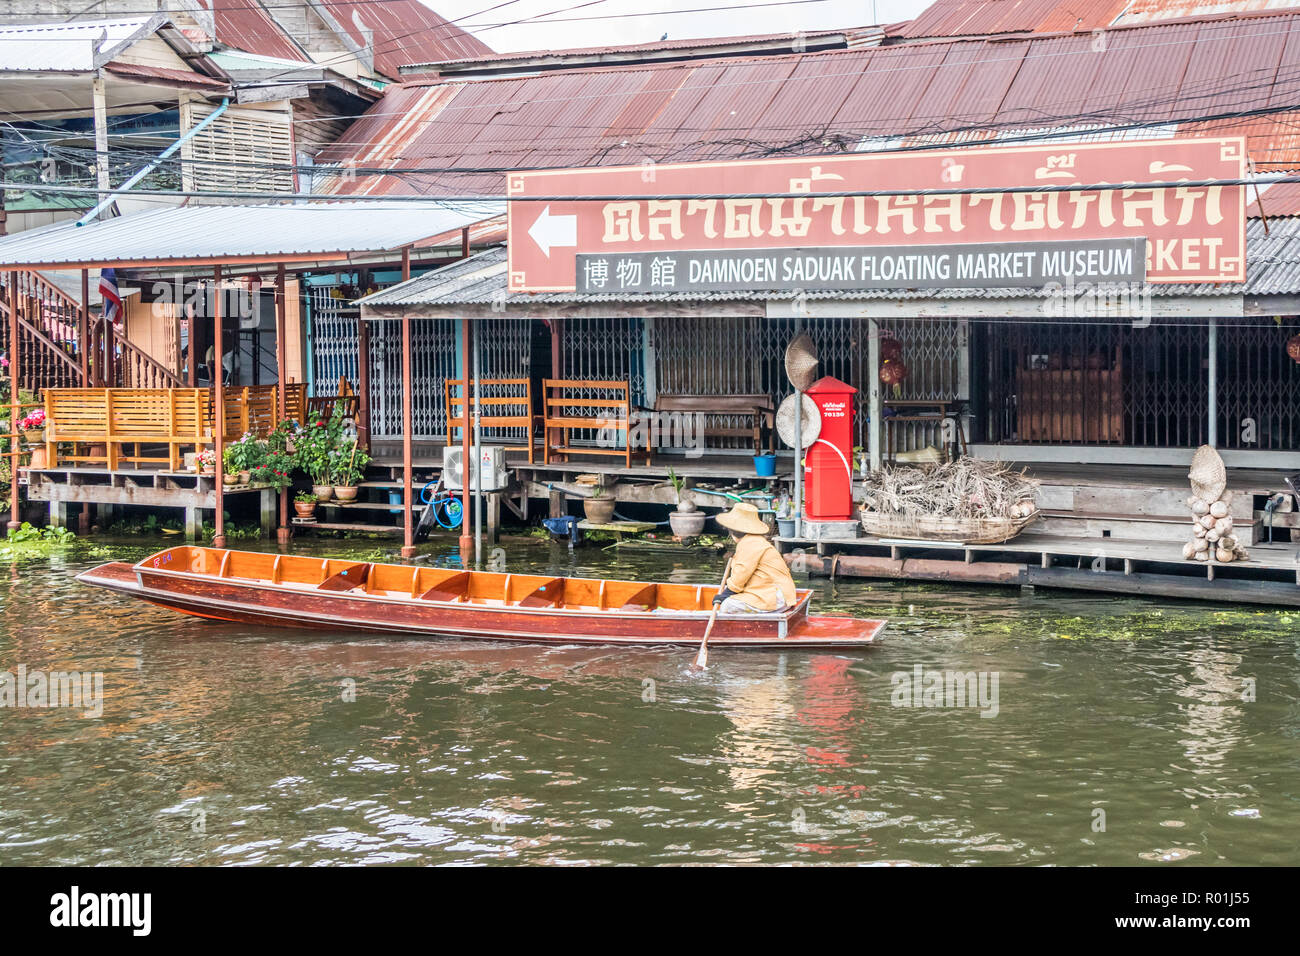 Damnoen Saduak, Thaïlande - 8 octobre 2018 : un bateau va passé le marché flottant museum. Le marché est une destination touristique très poular. Banque D'Images